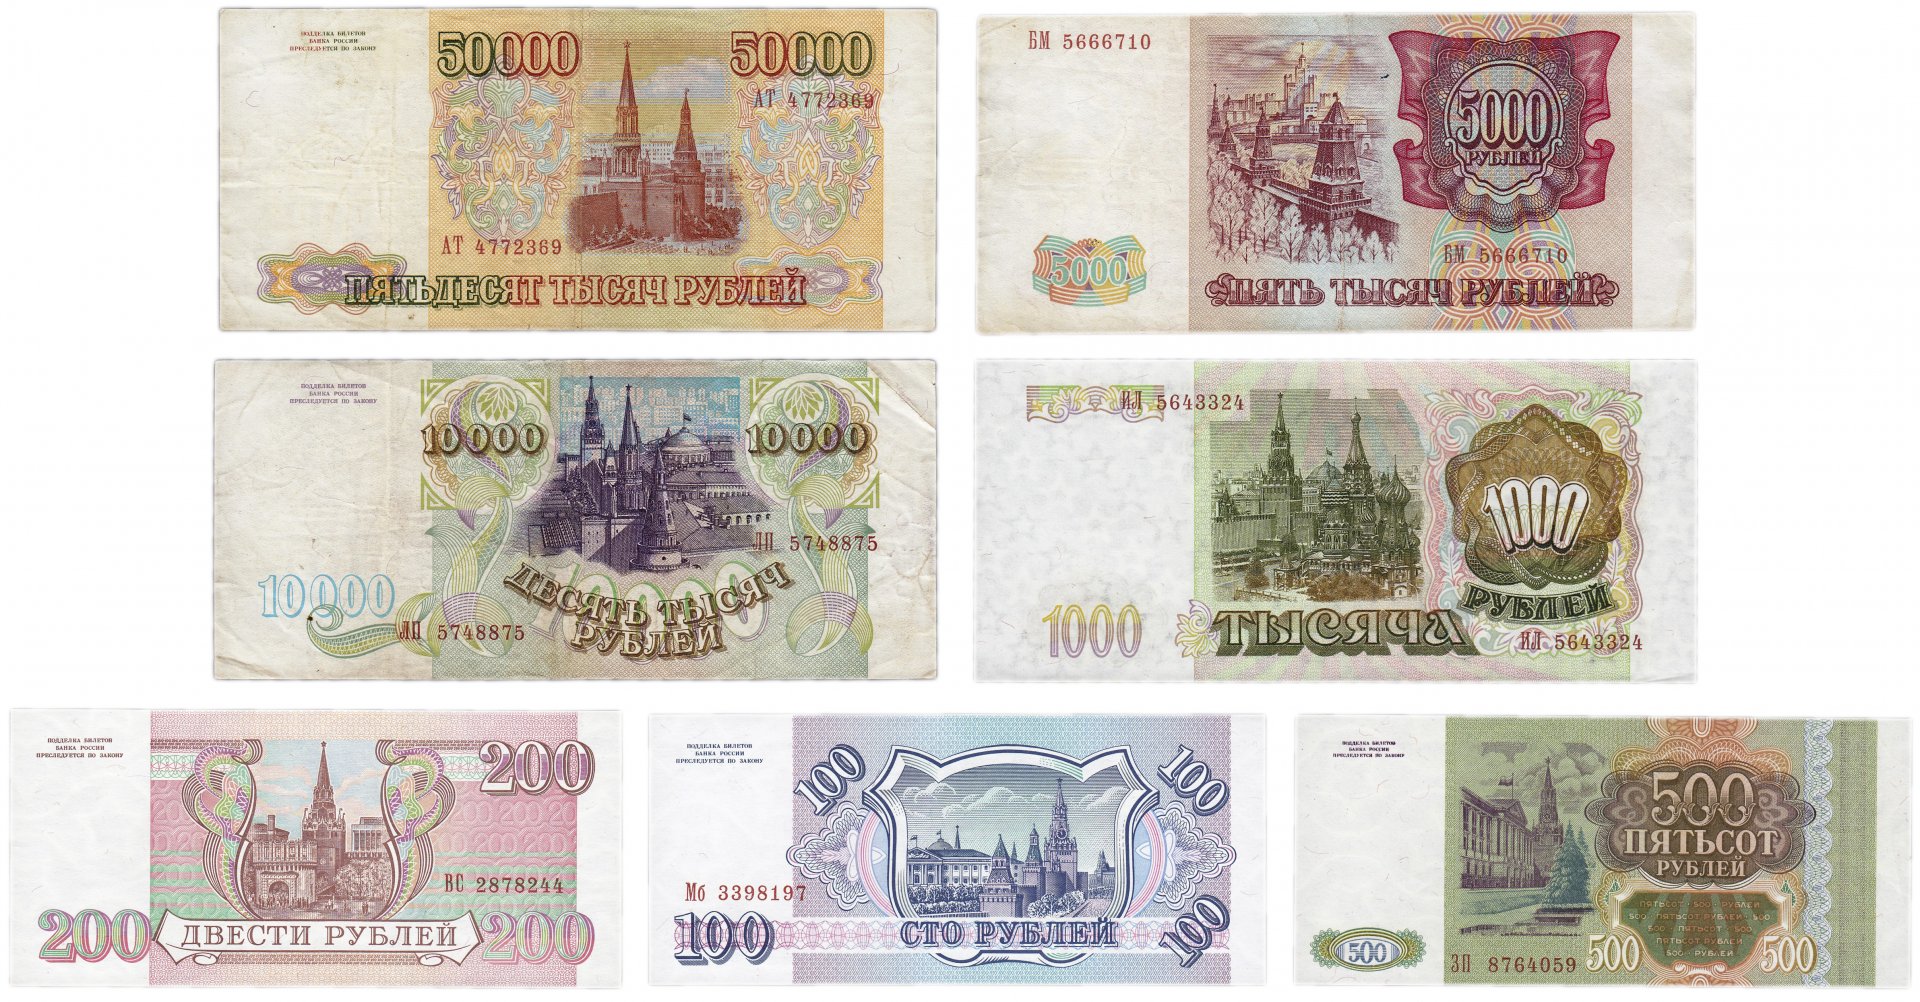 5000 рубль в сумах сегодня. 100 500 1000 Рублей. Купюры до девальвации.